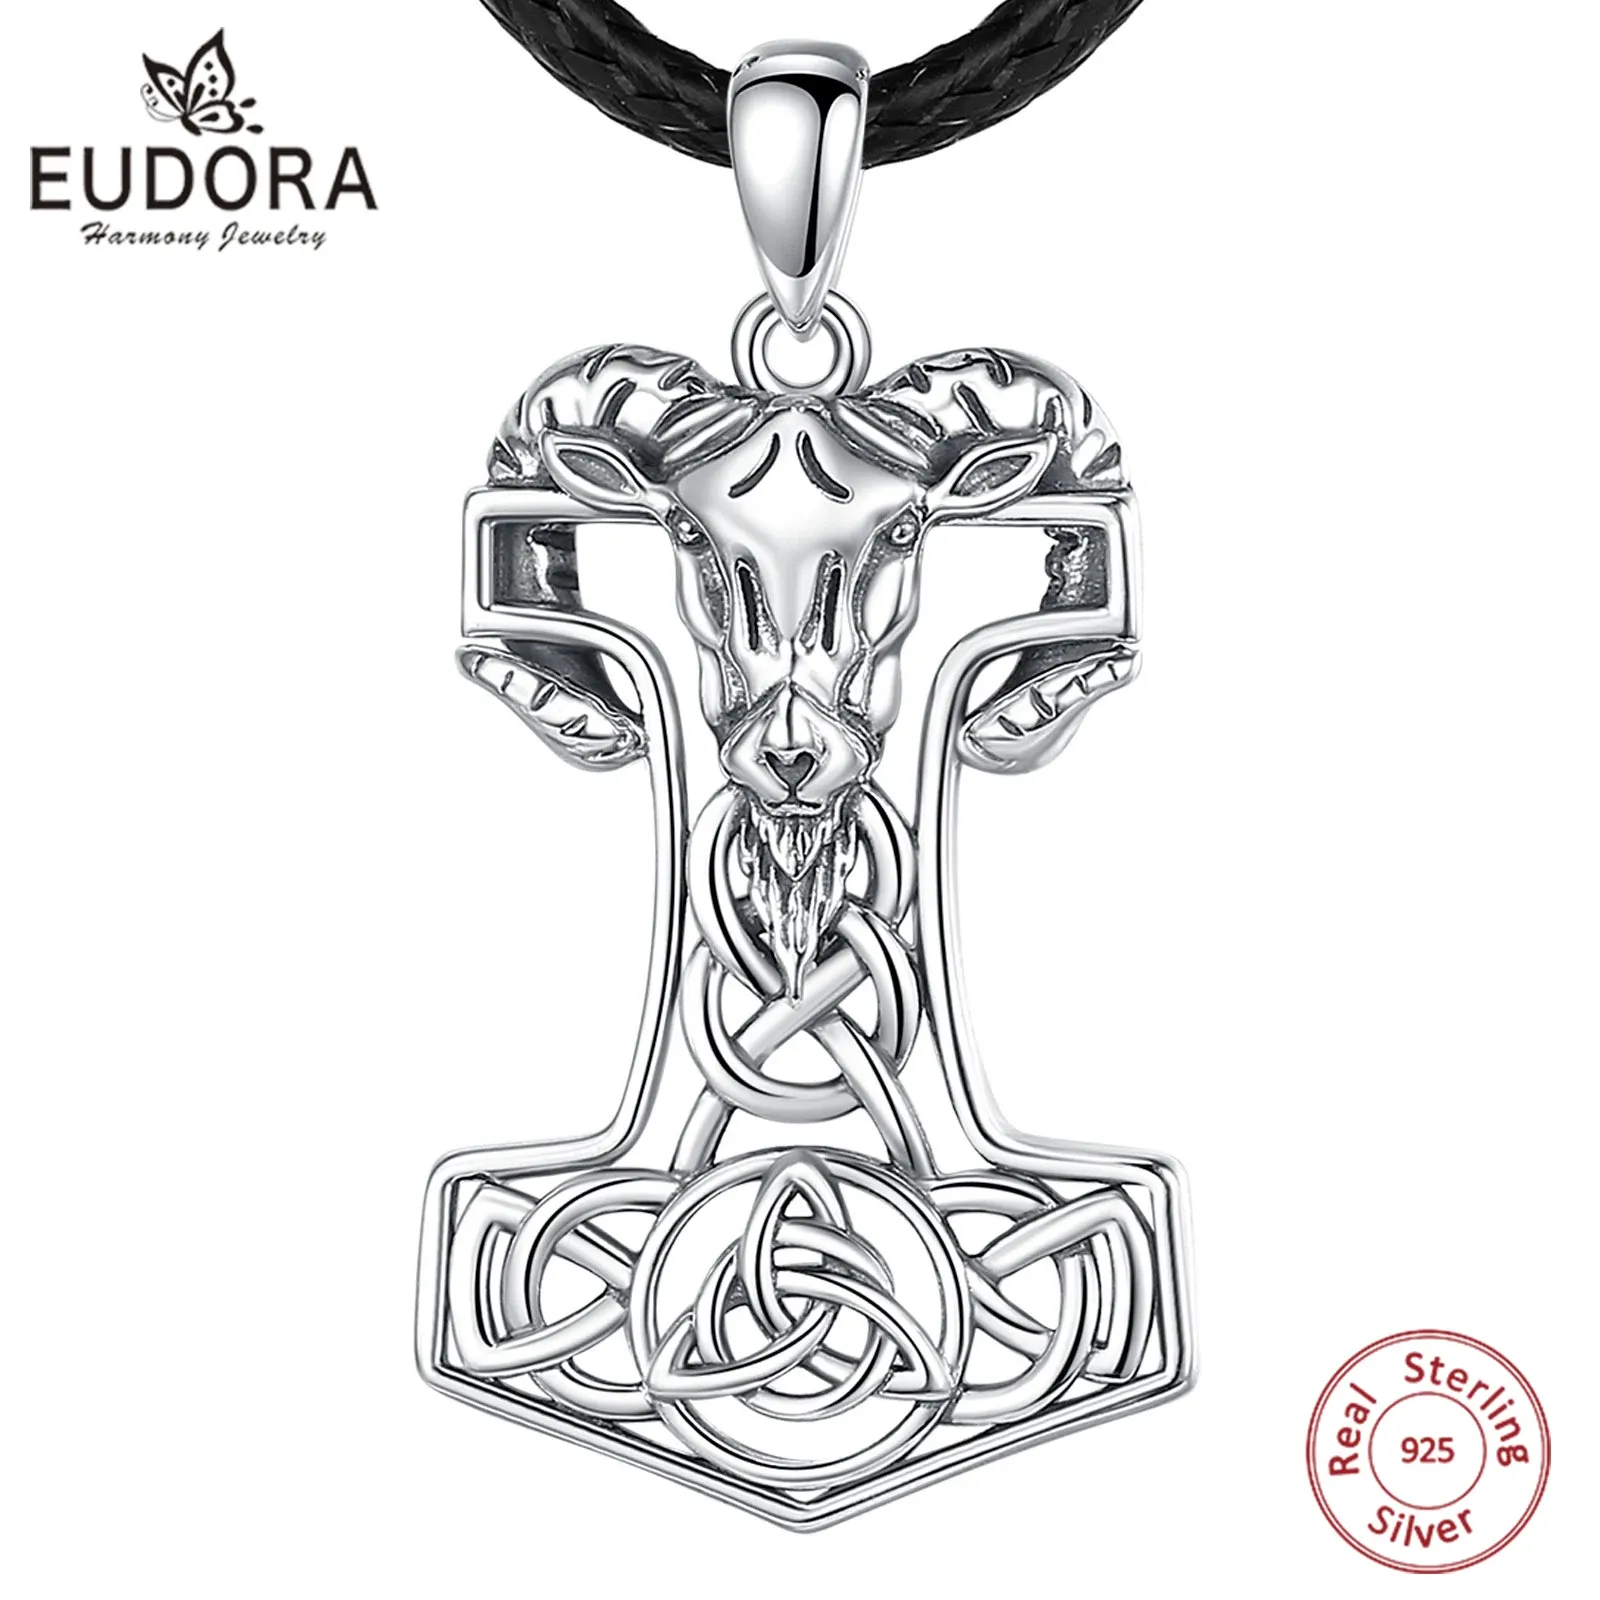 Pendentifs Eudora 925 argent Sterling nordique Viking marteau de Thor Mjolnir Rune collier chèvre celtique noeud amulette pendentif personnalité bijoux